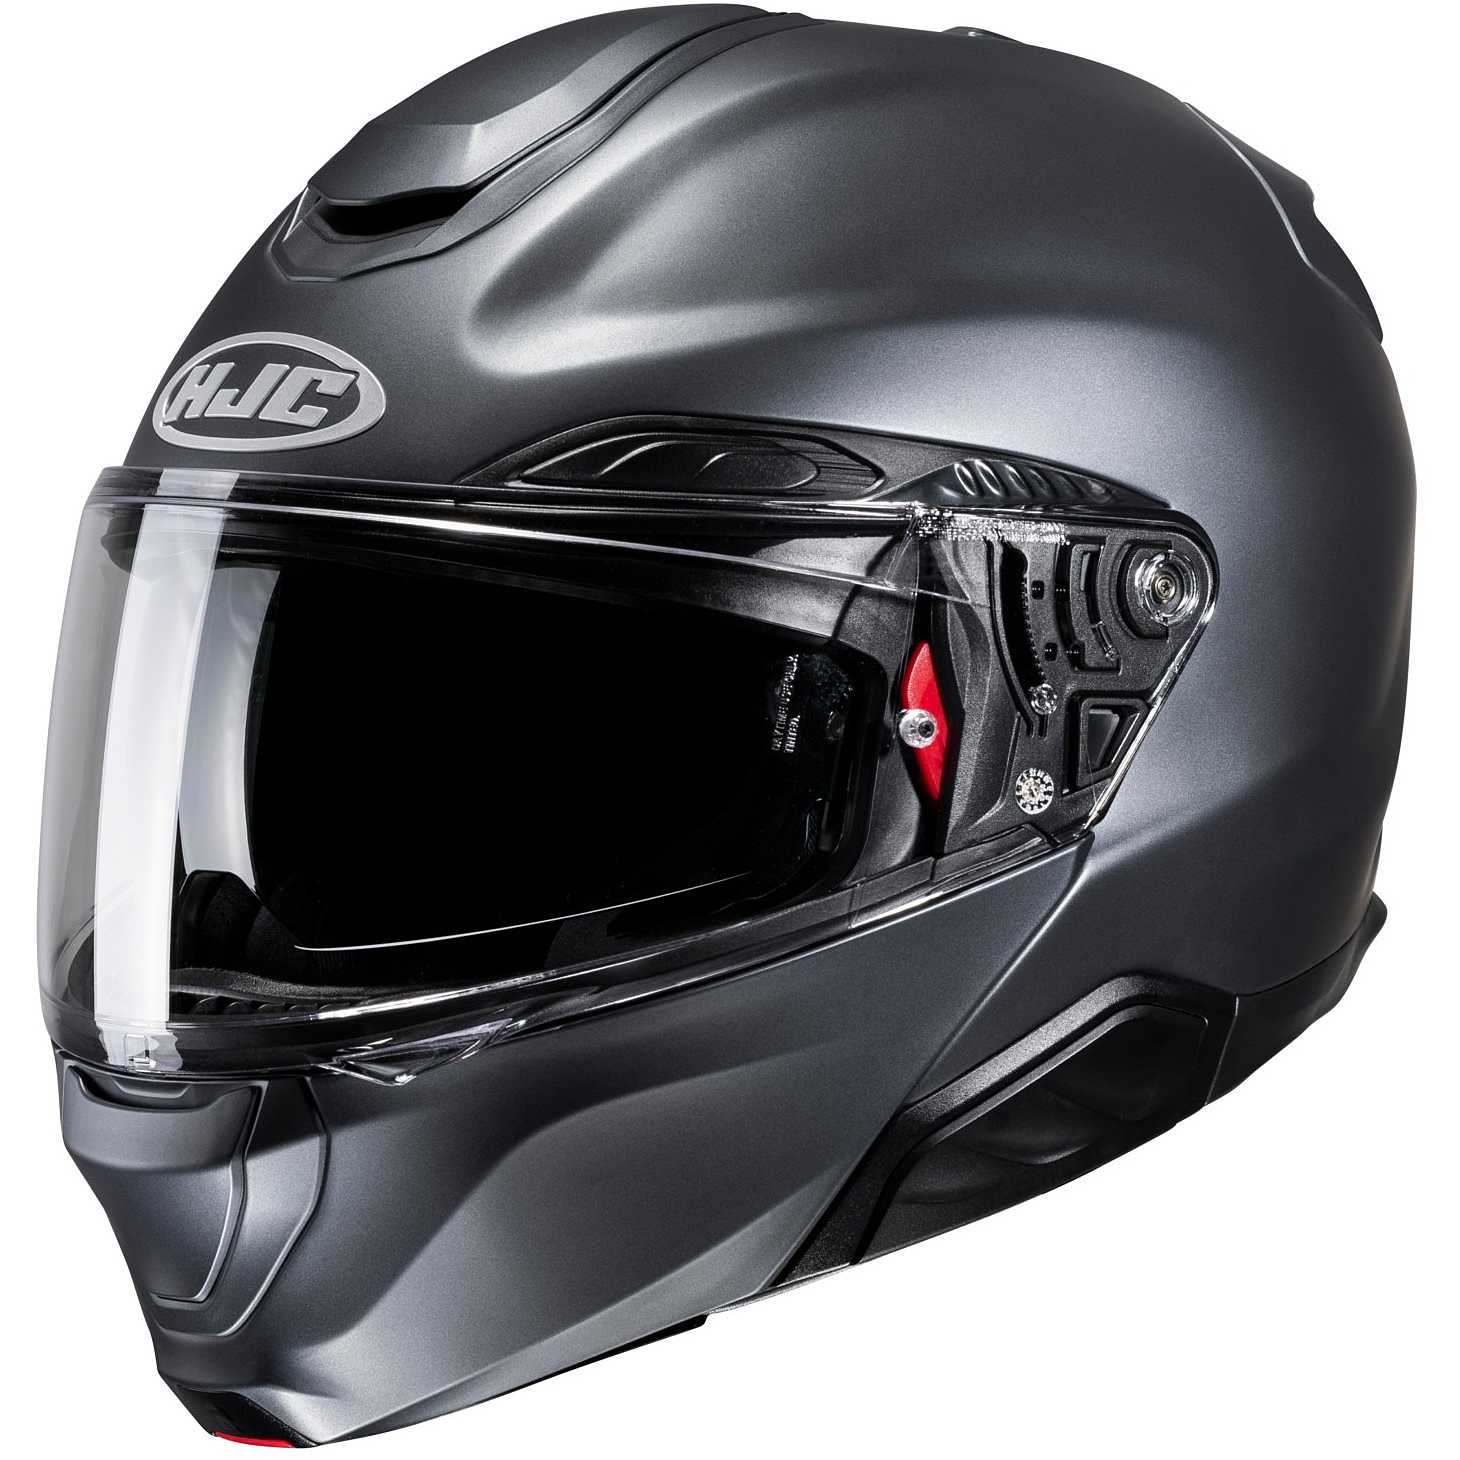 Casque modulable moto : Dafy Moto, vente en ligne de casques moto